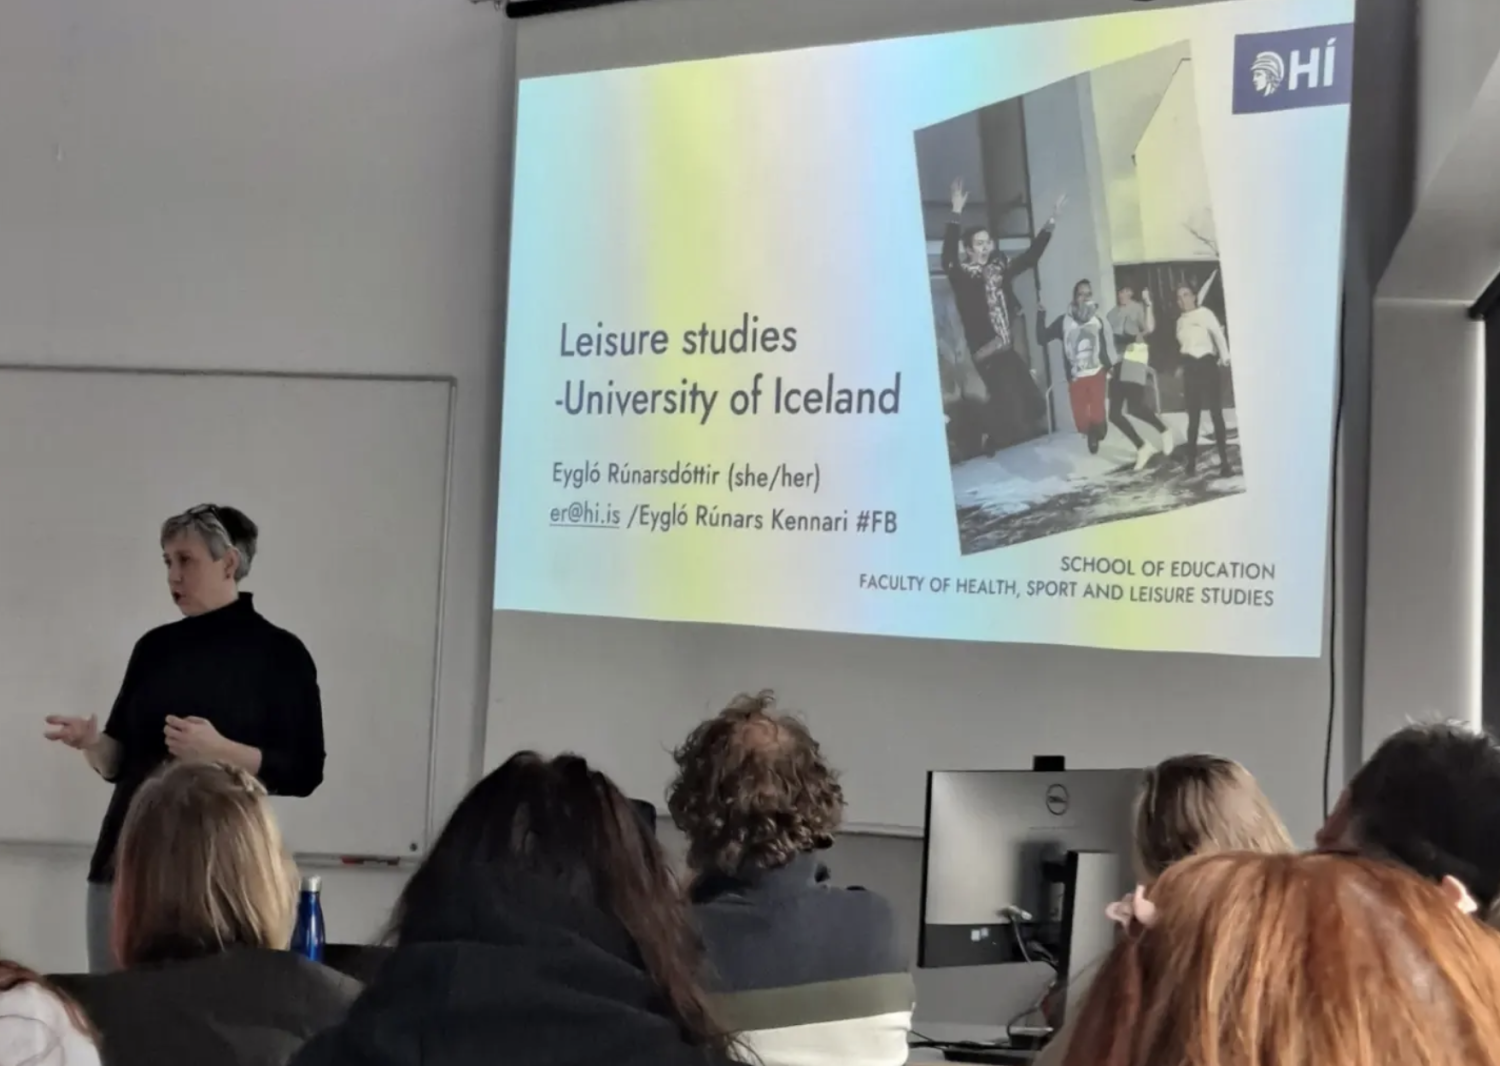 Ástríður Stefánsdóttir perehdyttämässä nuorisotyöntekijöitä Islannin yliopiston opinto-ohjelmiin